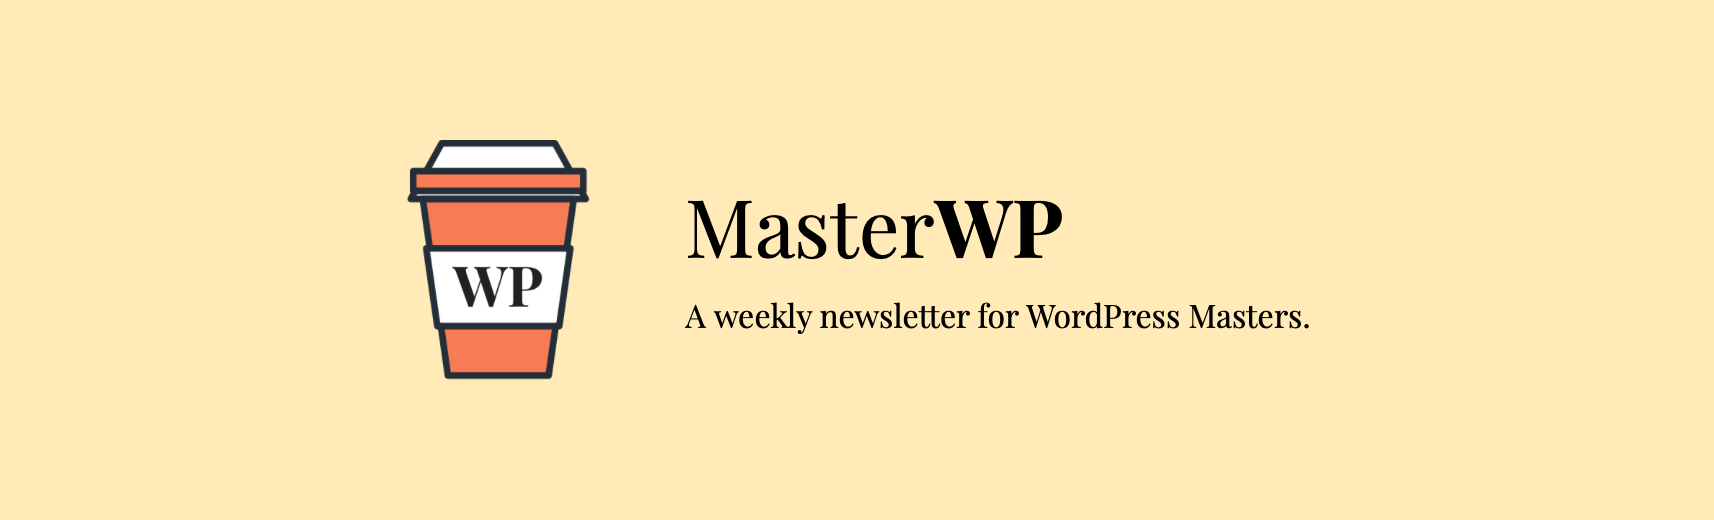 The MasterWP newsletter banner.